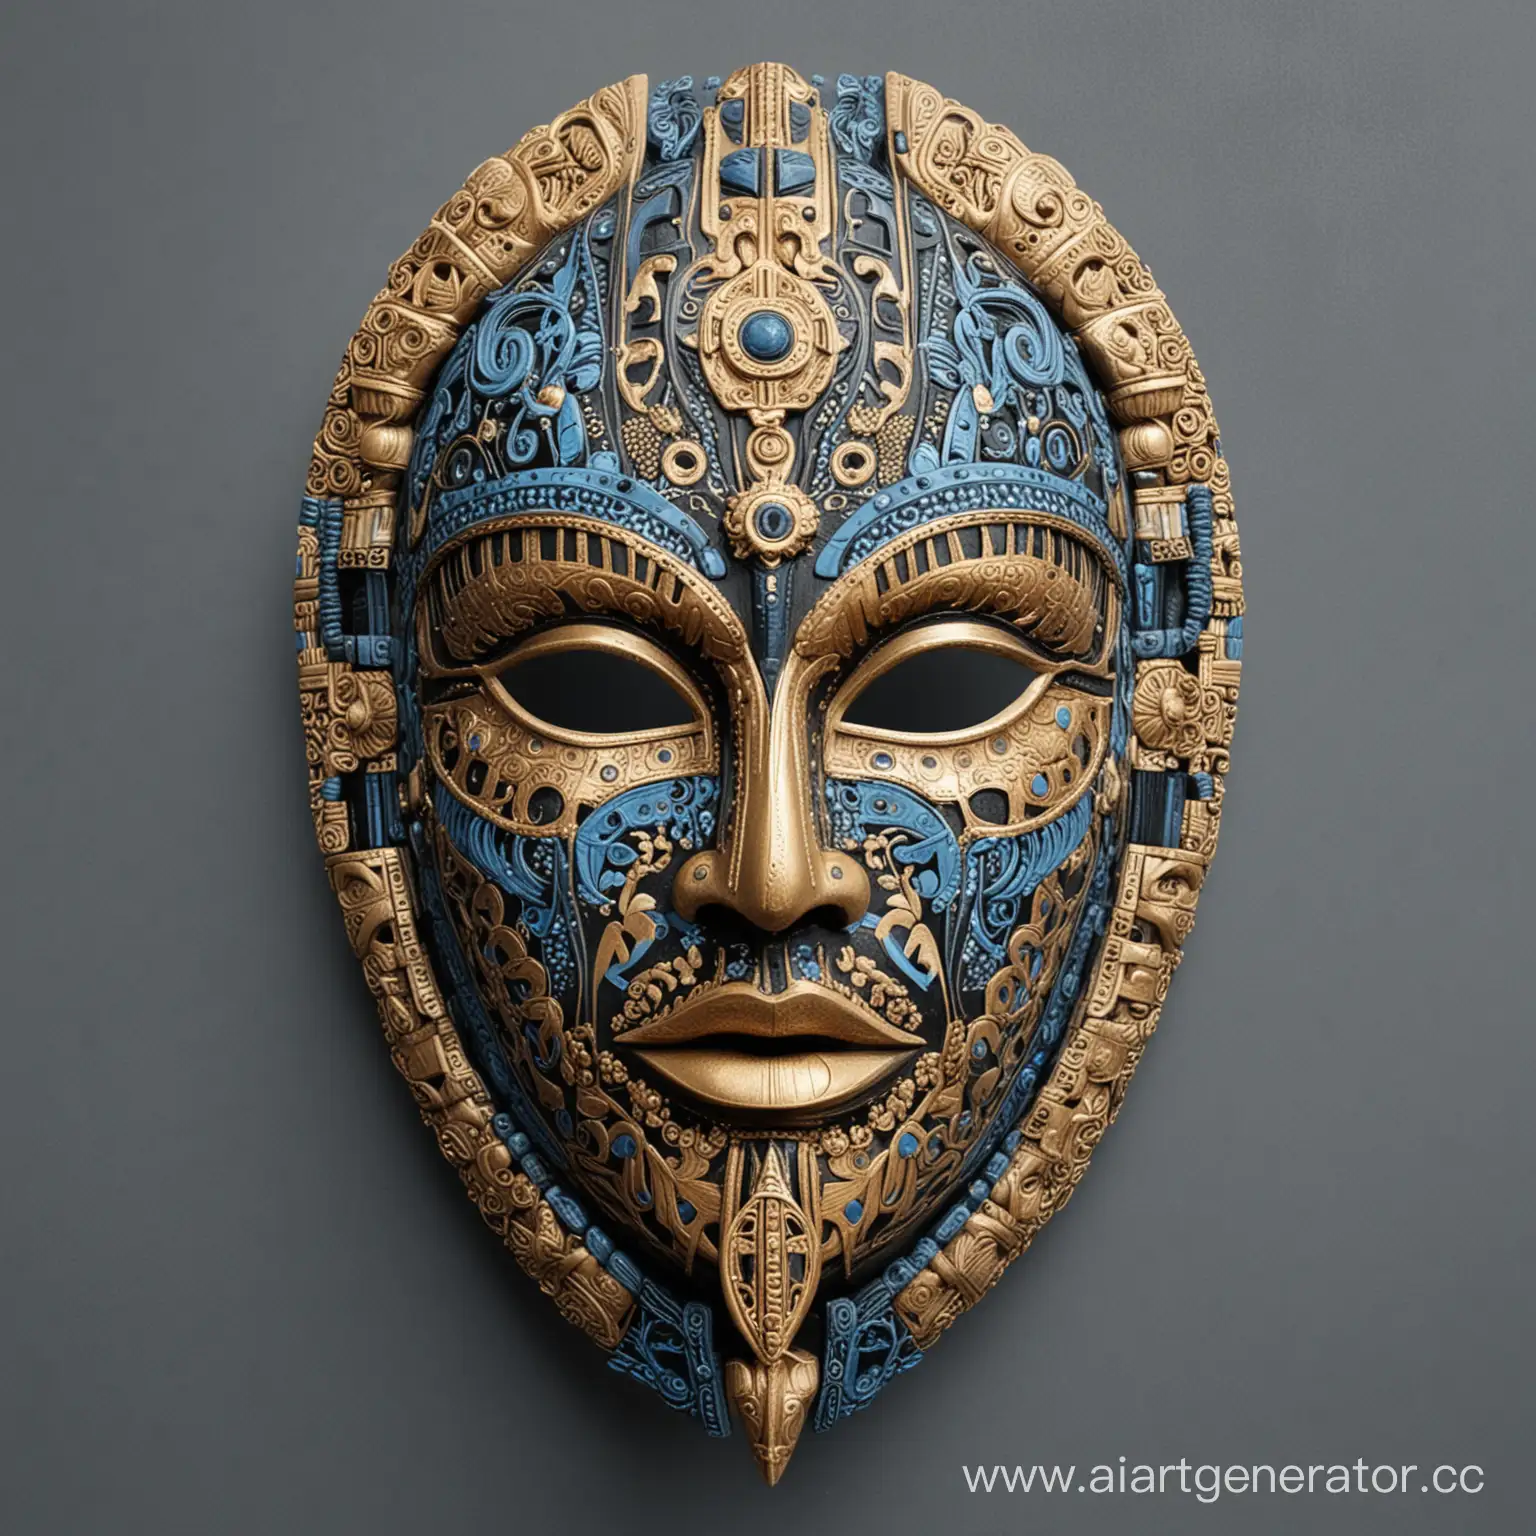 Большая интерьерная маска скандинавской вёллы , этническая ,символичная, симметричная, сложно выполненная,  со множеством деталей и фактур . Выполнена в черном, синем, голубом, бежевом, золотом цветах